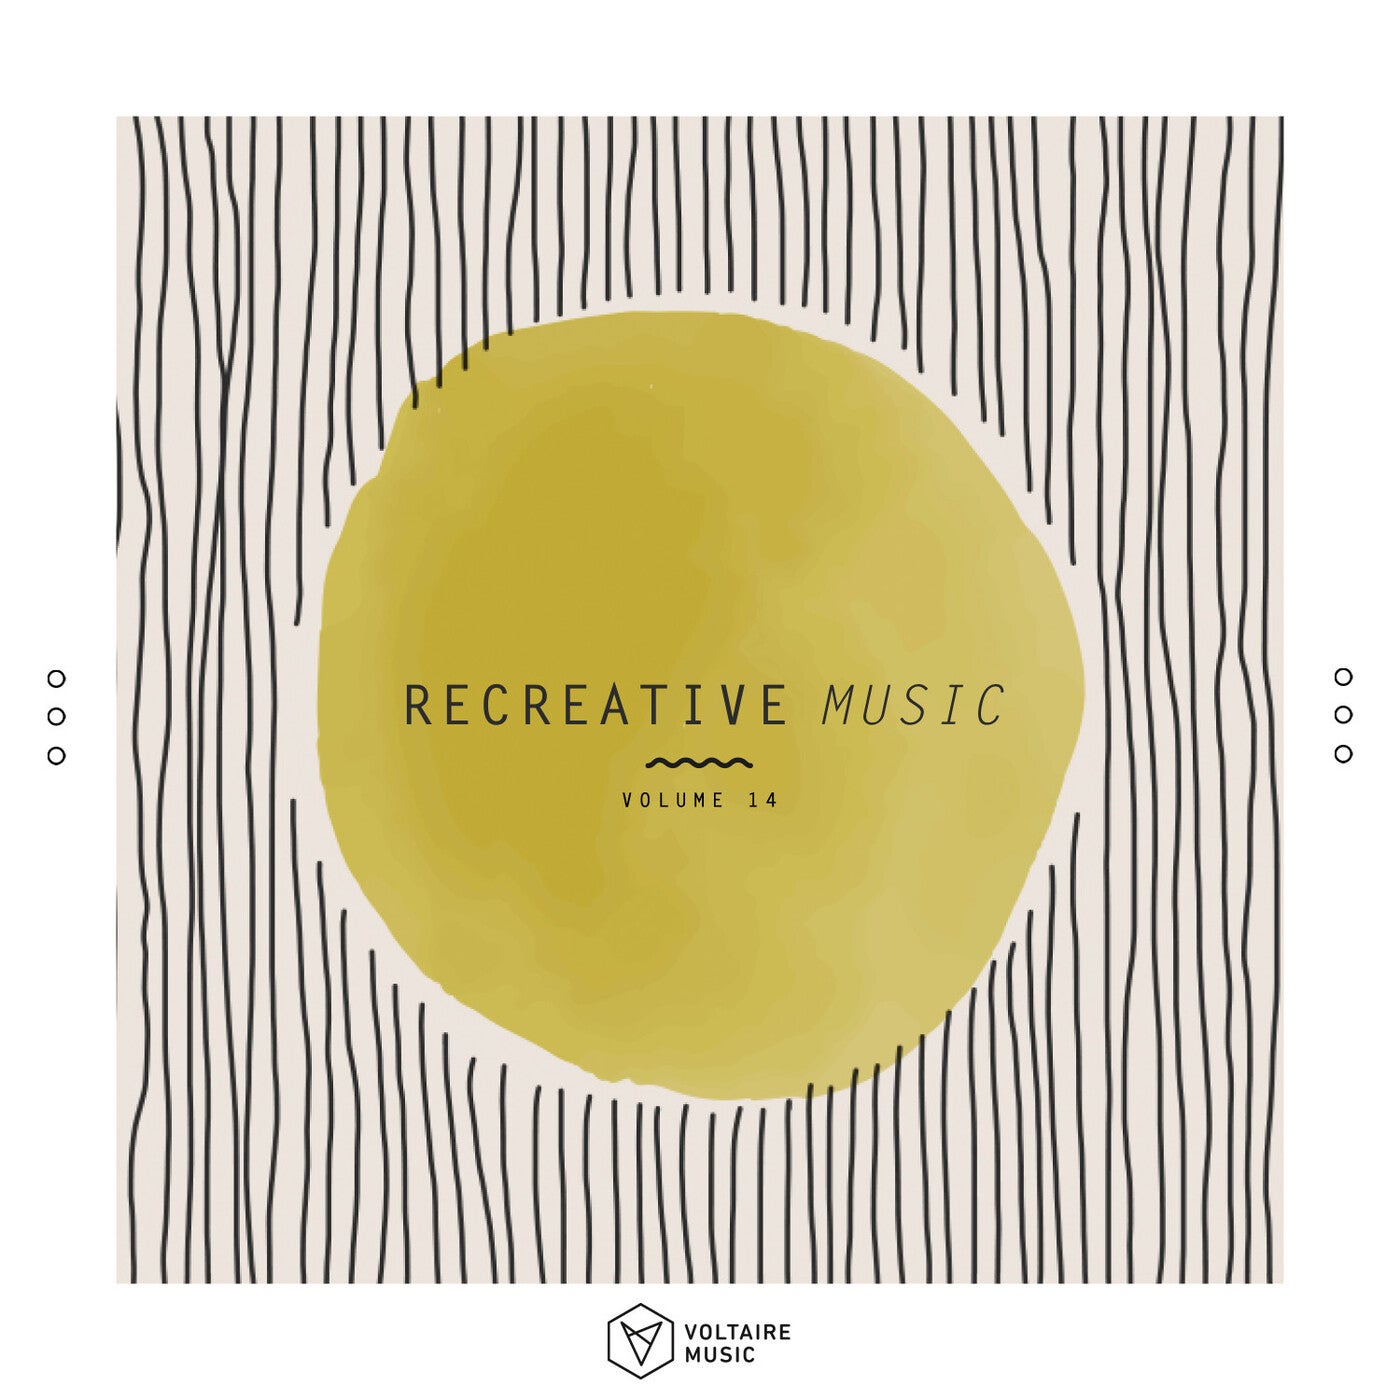 Re:creative Music Vol. 14